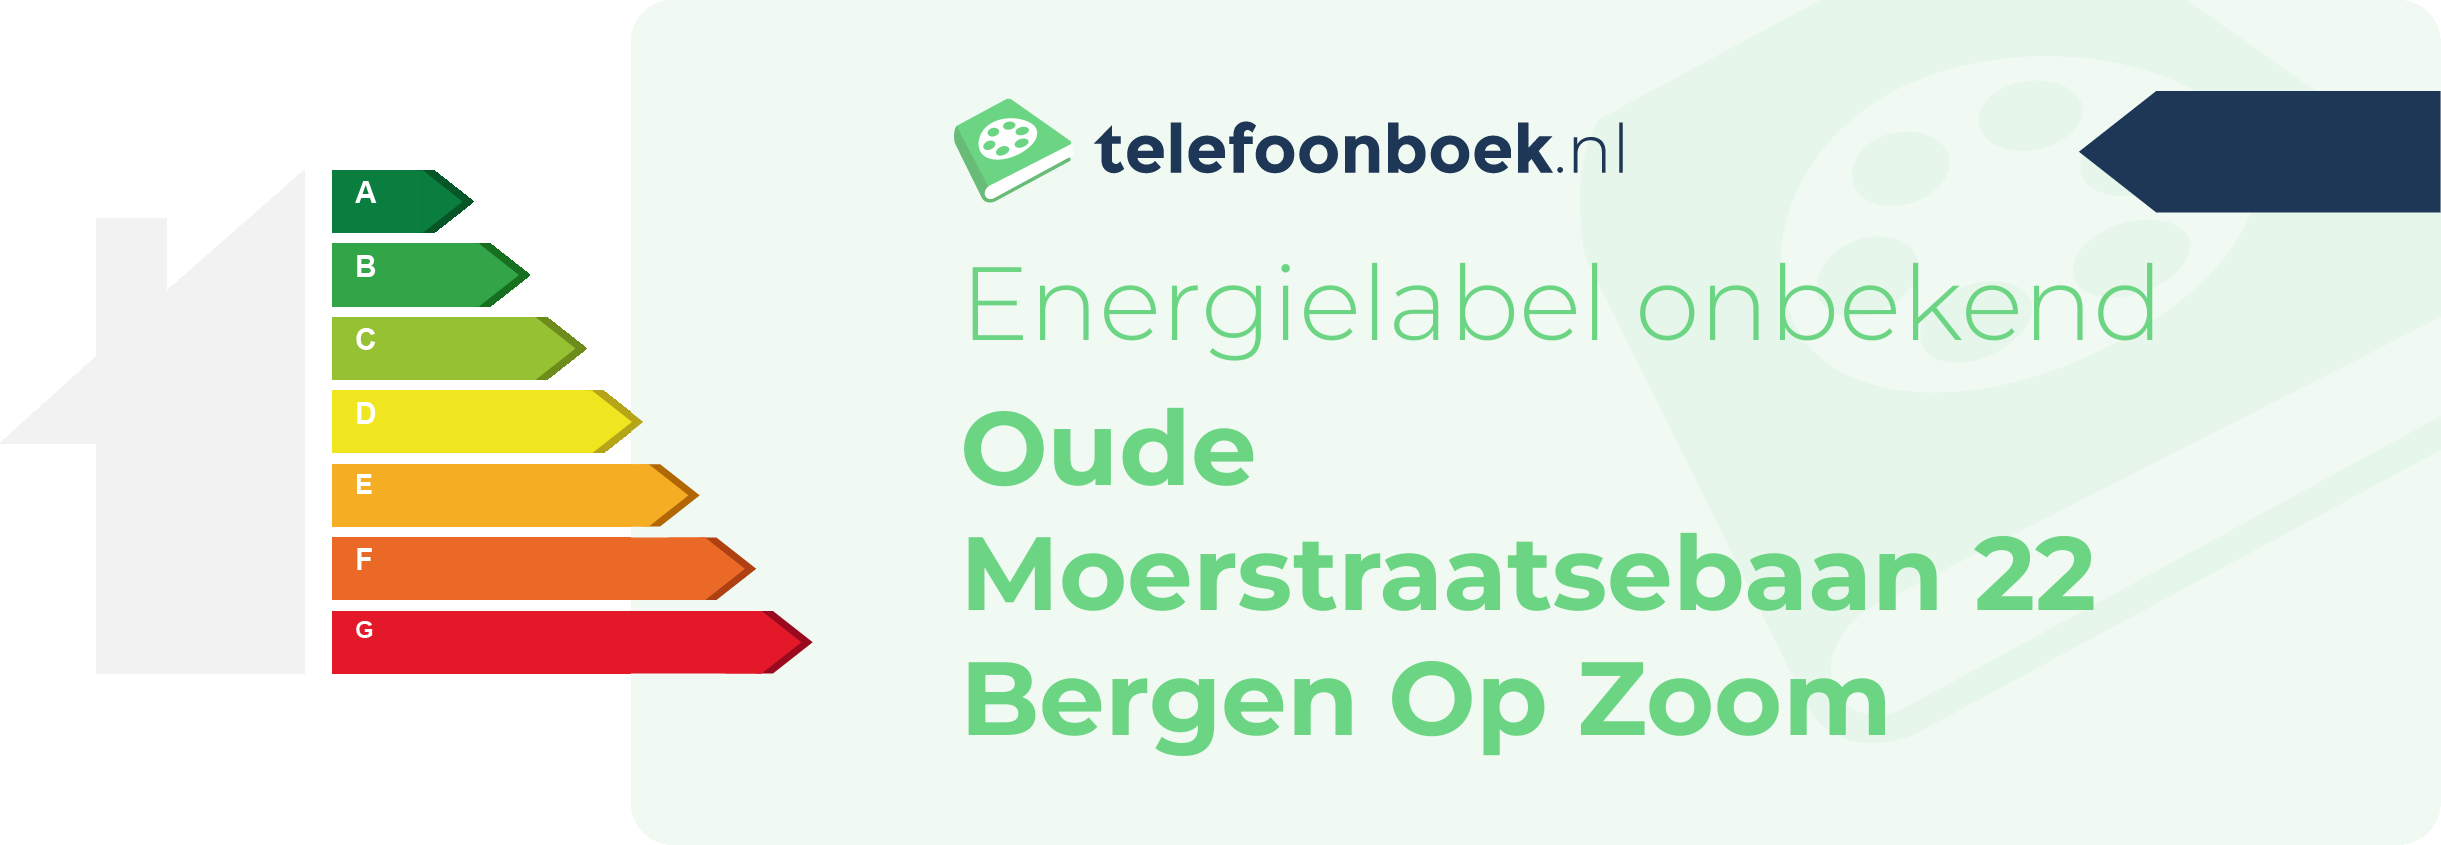 Energielabel Oude Moerstraatsebaan 22 Bergen Op Zoom